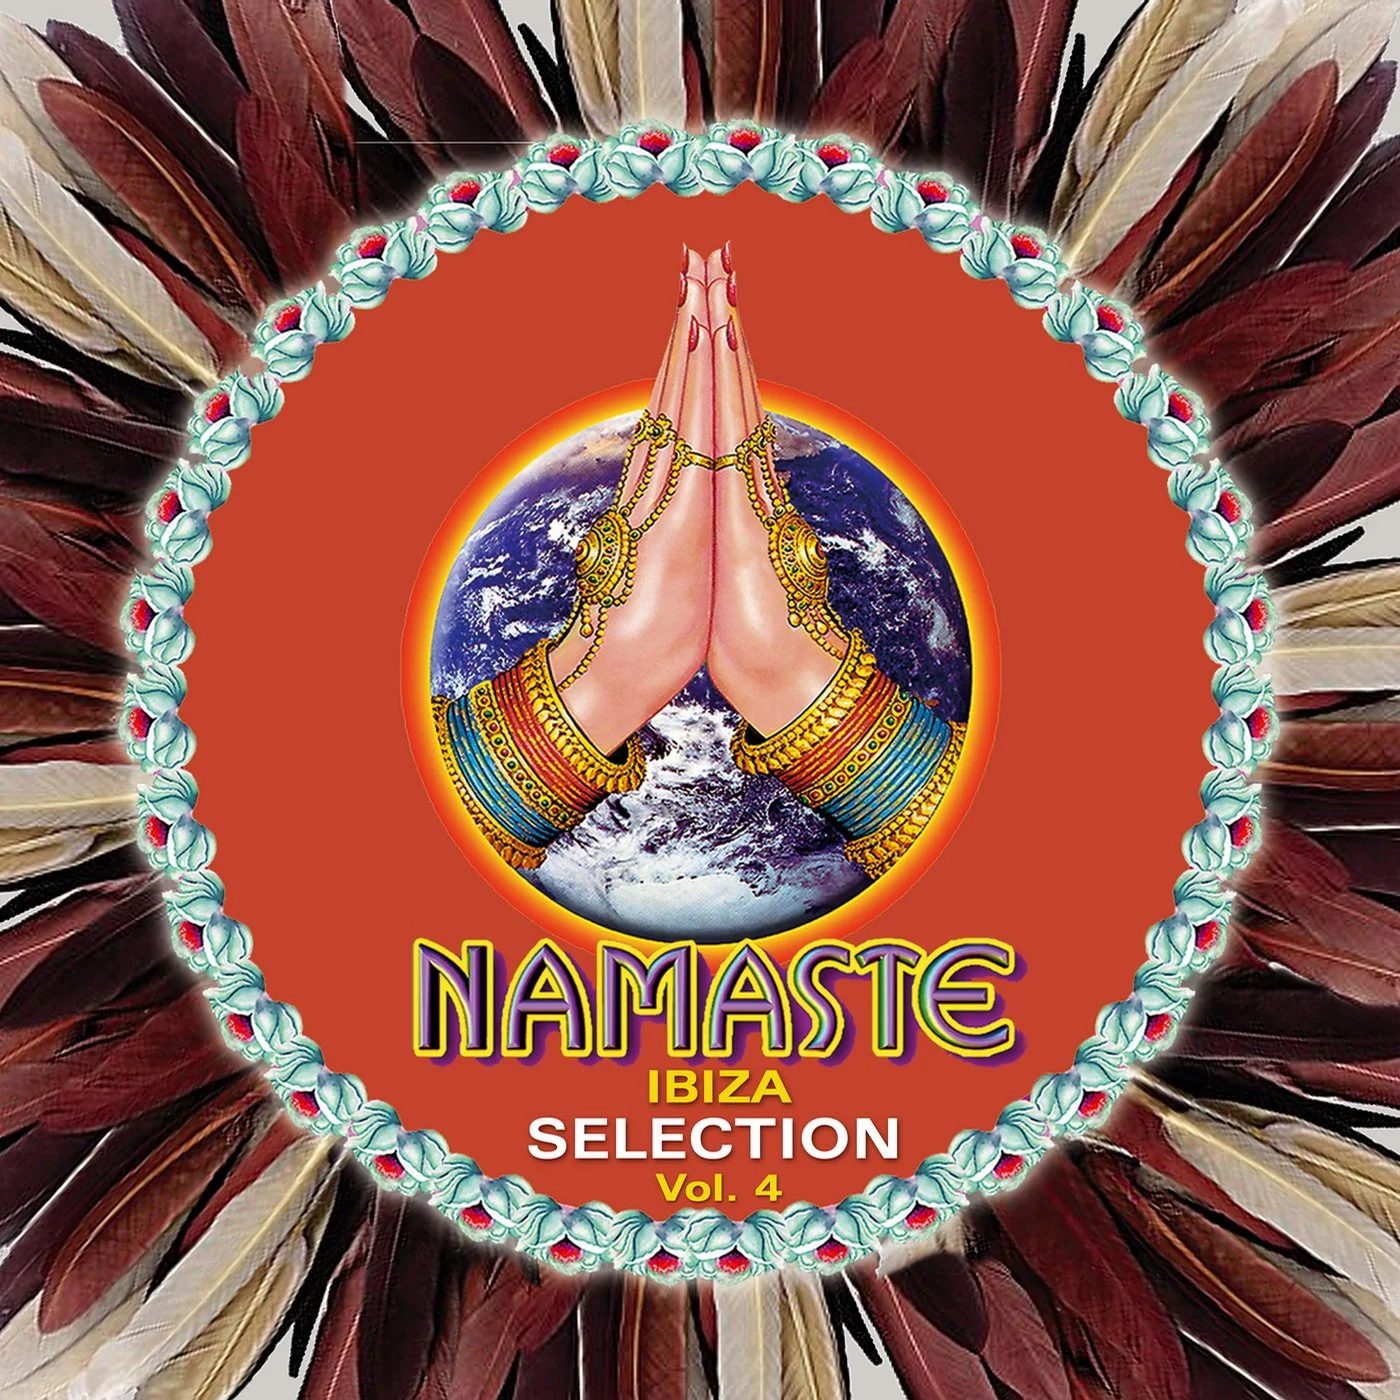 Cover von Compilation "Namaste Ibiza Selection, Vol. 4"